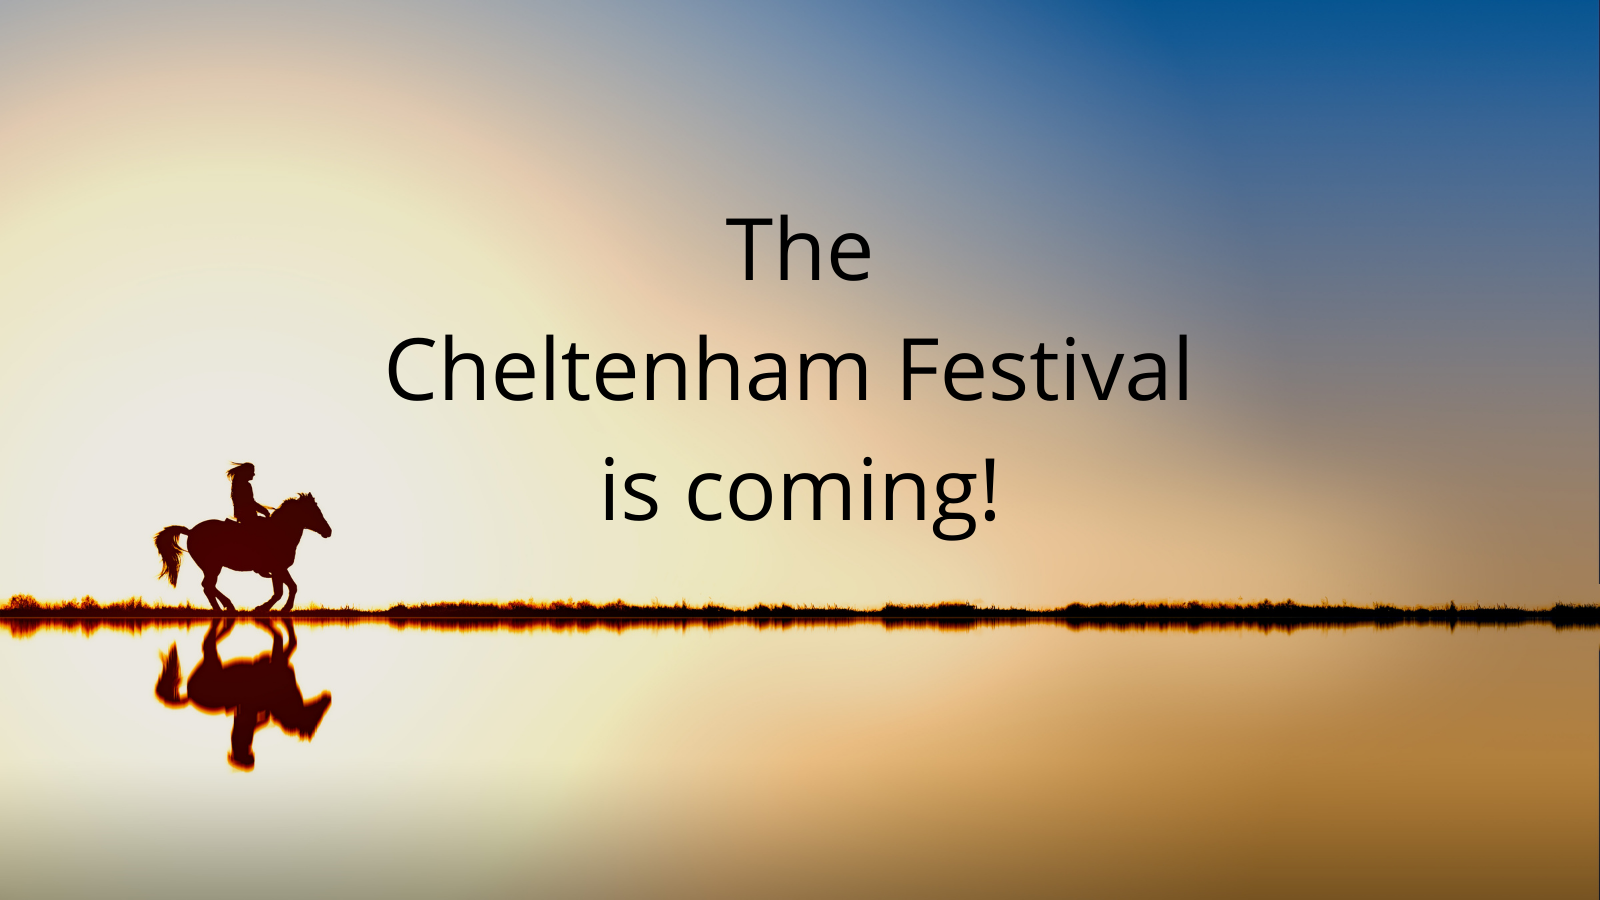 The Cheltenham Festival is coming!